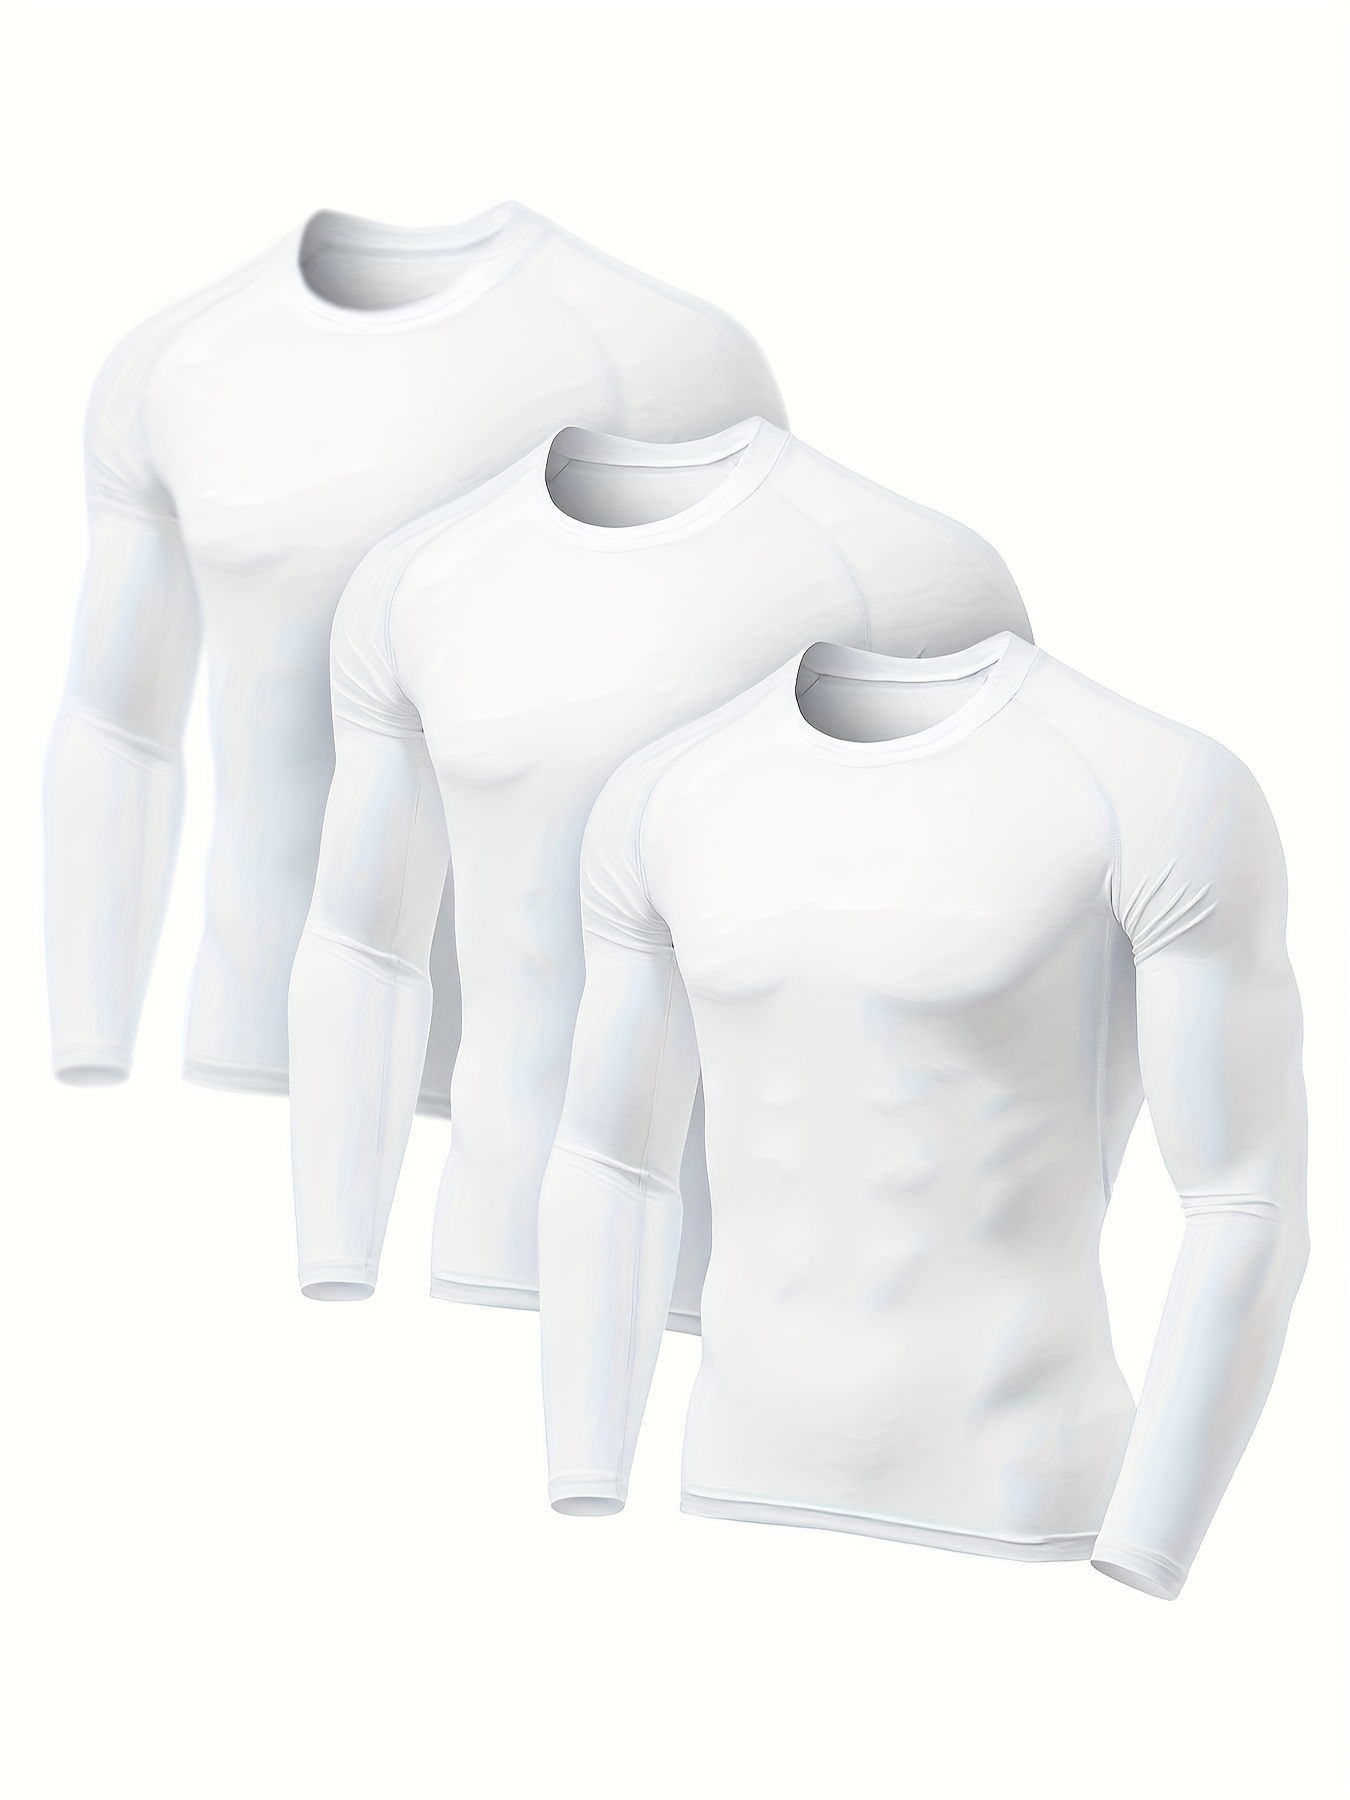 TSLA Paquete de 1 o 2 camisetas térmicas de compresión de manga larga para  hombre, camiseta de capa base atlética, camiseta de invierno para correr